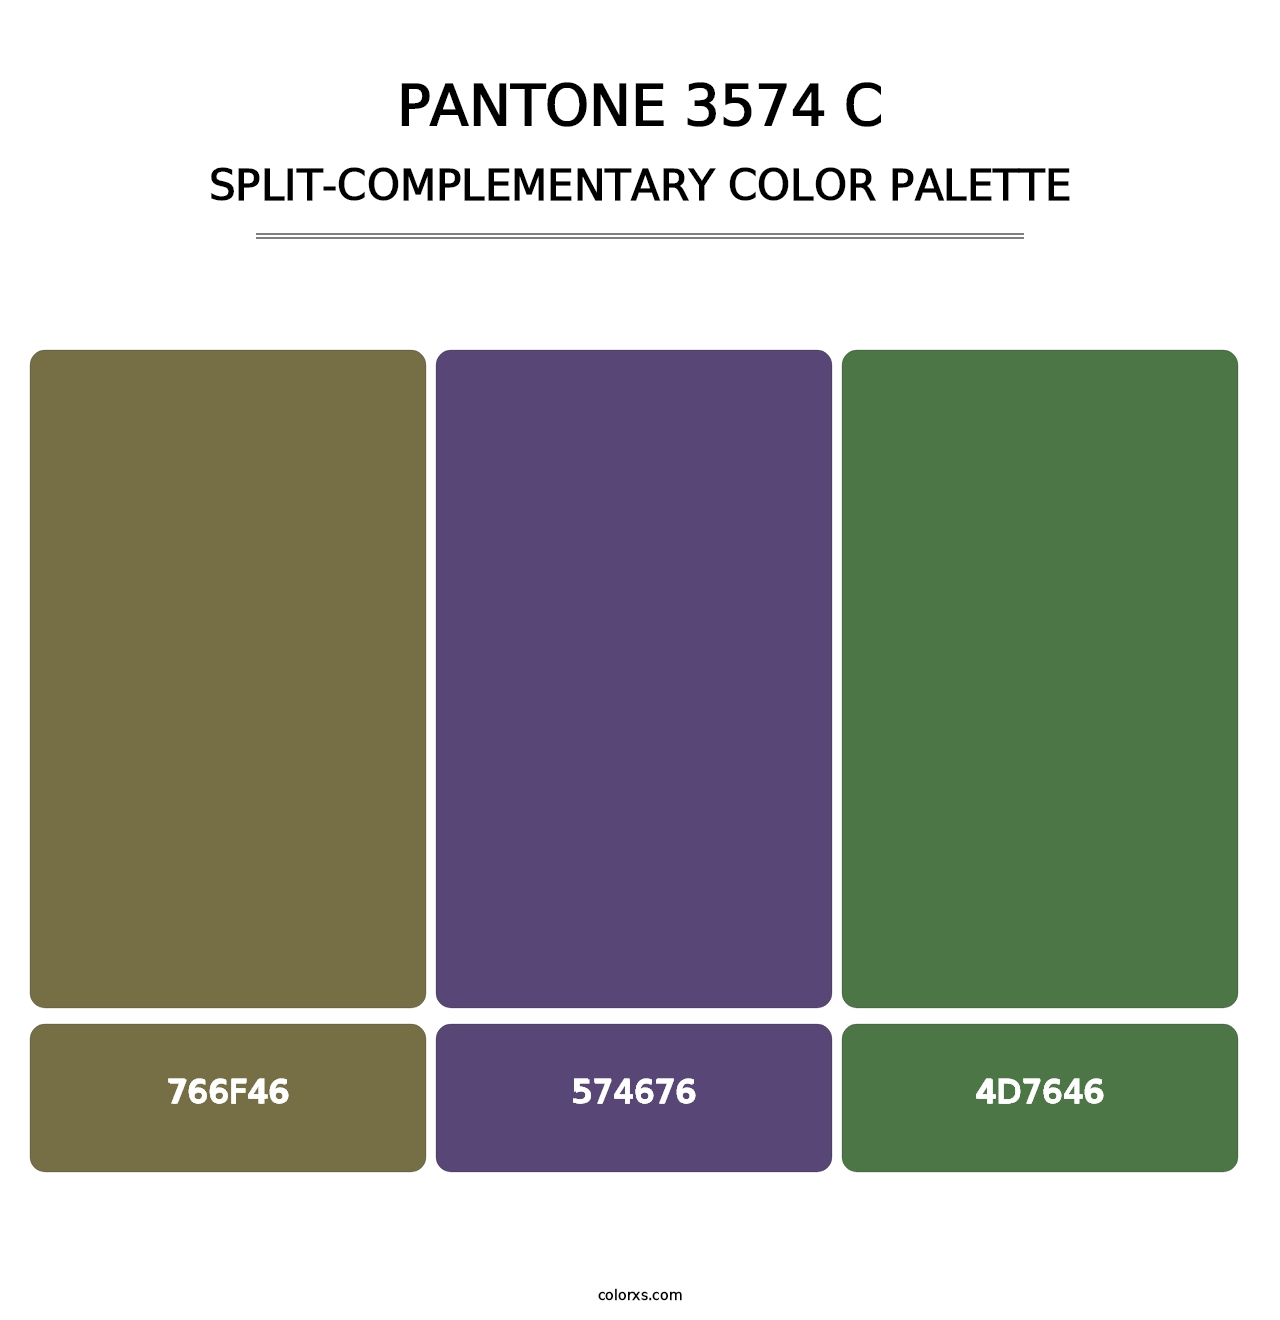 PANTONE 3574 C - Split-Complementary Color Palette